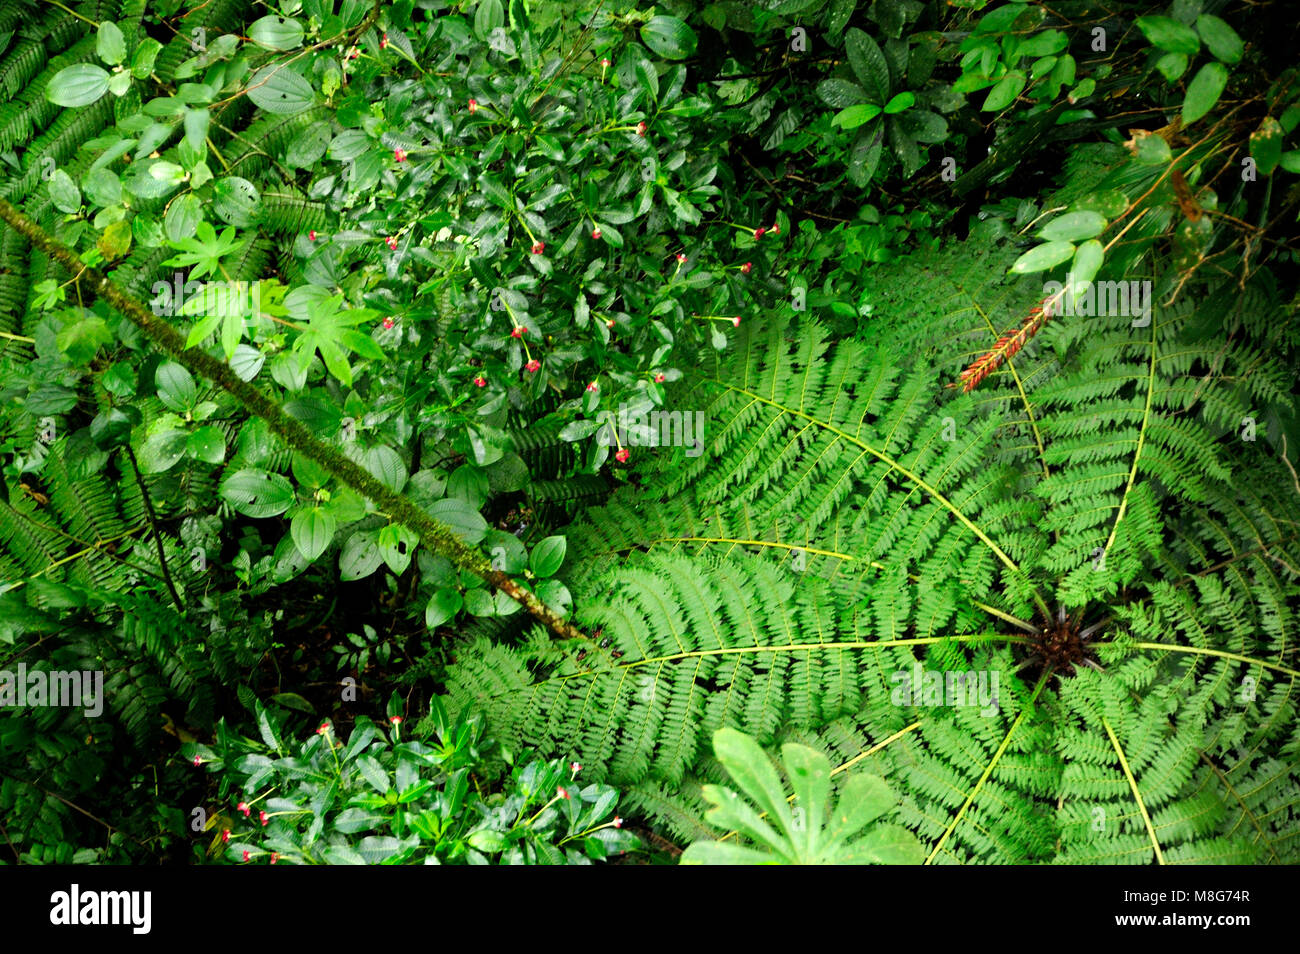 Die Monteverde Cloud Forest Reserve wurde 1972 gegründet und zunächst rund 810 Hektar großen, bewaldeten Grundstück. Über 8 Meilen (13 km) Wanderwege sind Stockfoto